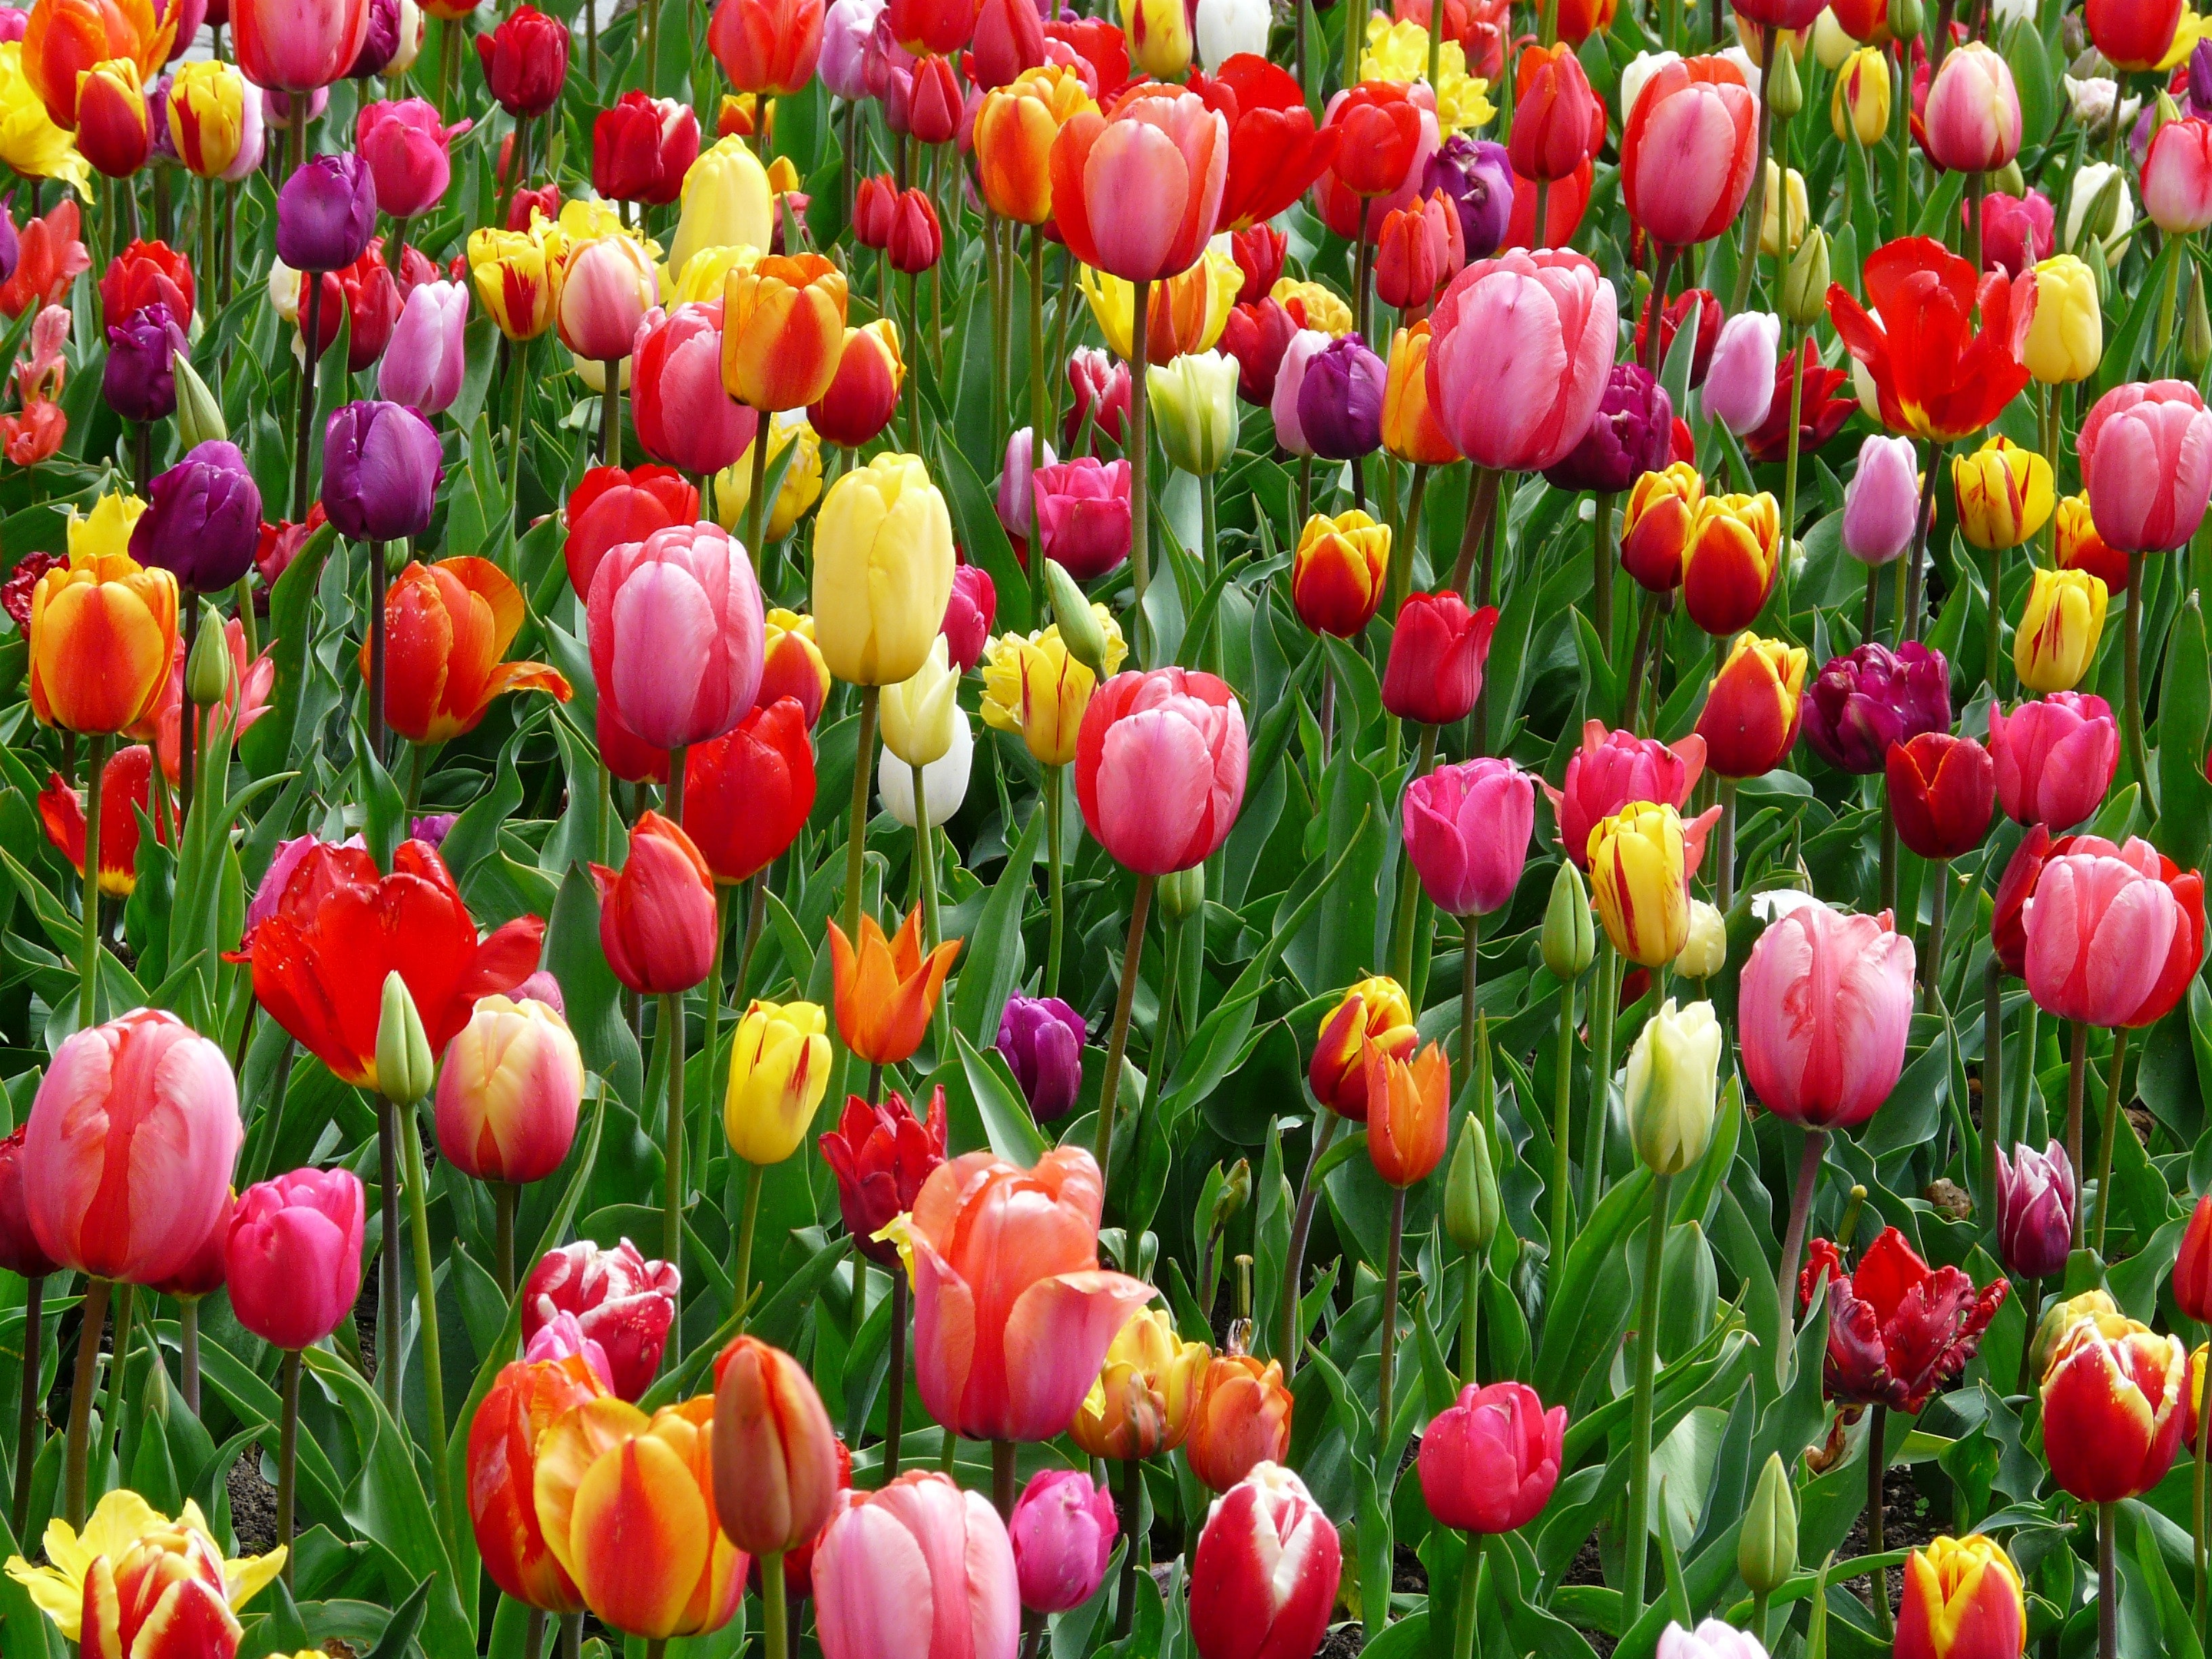 Campos de tulipanes rojos, morados y amarillos